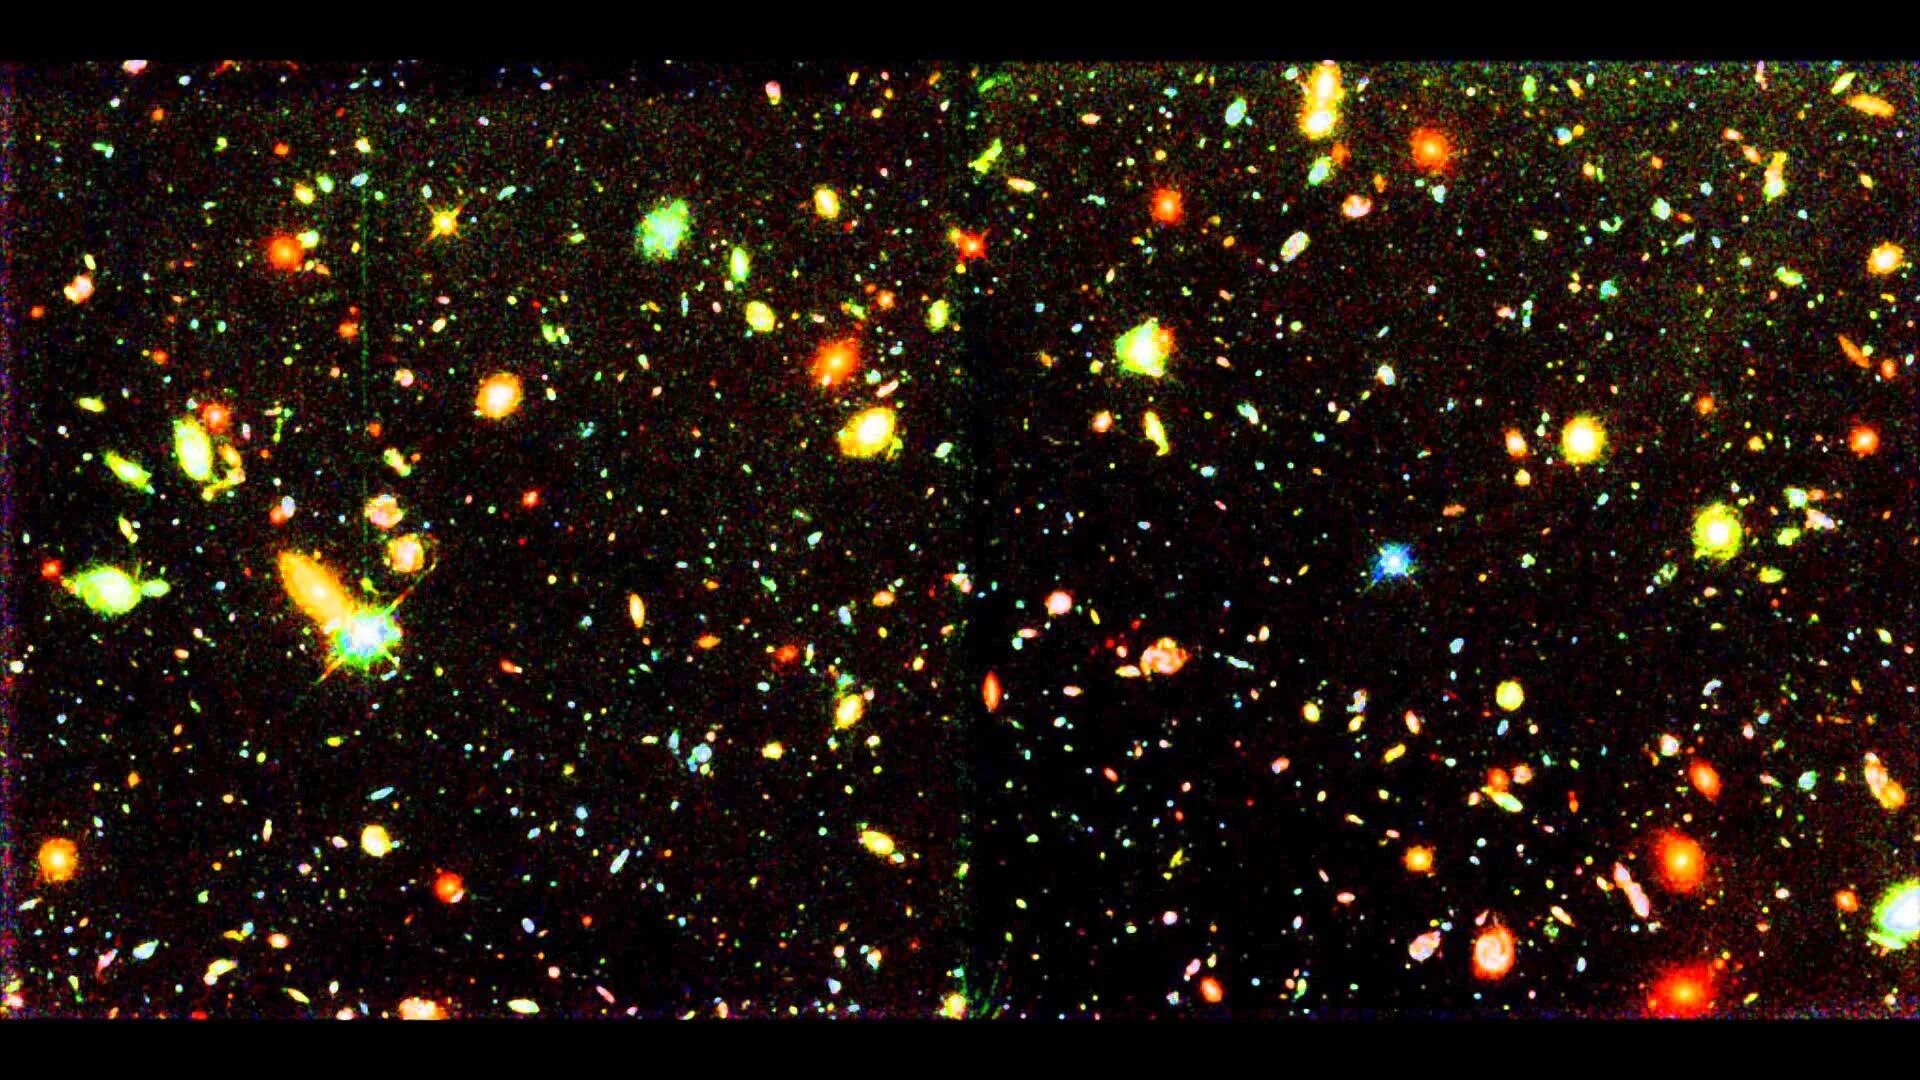 Хаббл дип Филд. Телескоп Хаббл ультра дип Филд. Ультра глубокое поле Хаббла. Hubble Deep field и Hubble Ultra Deep field. Space fields